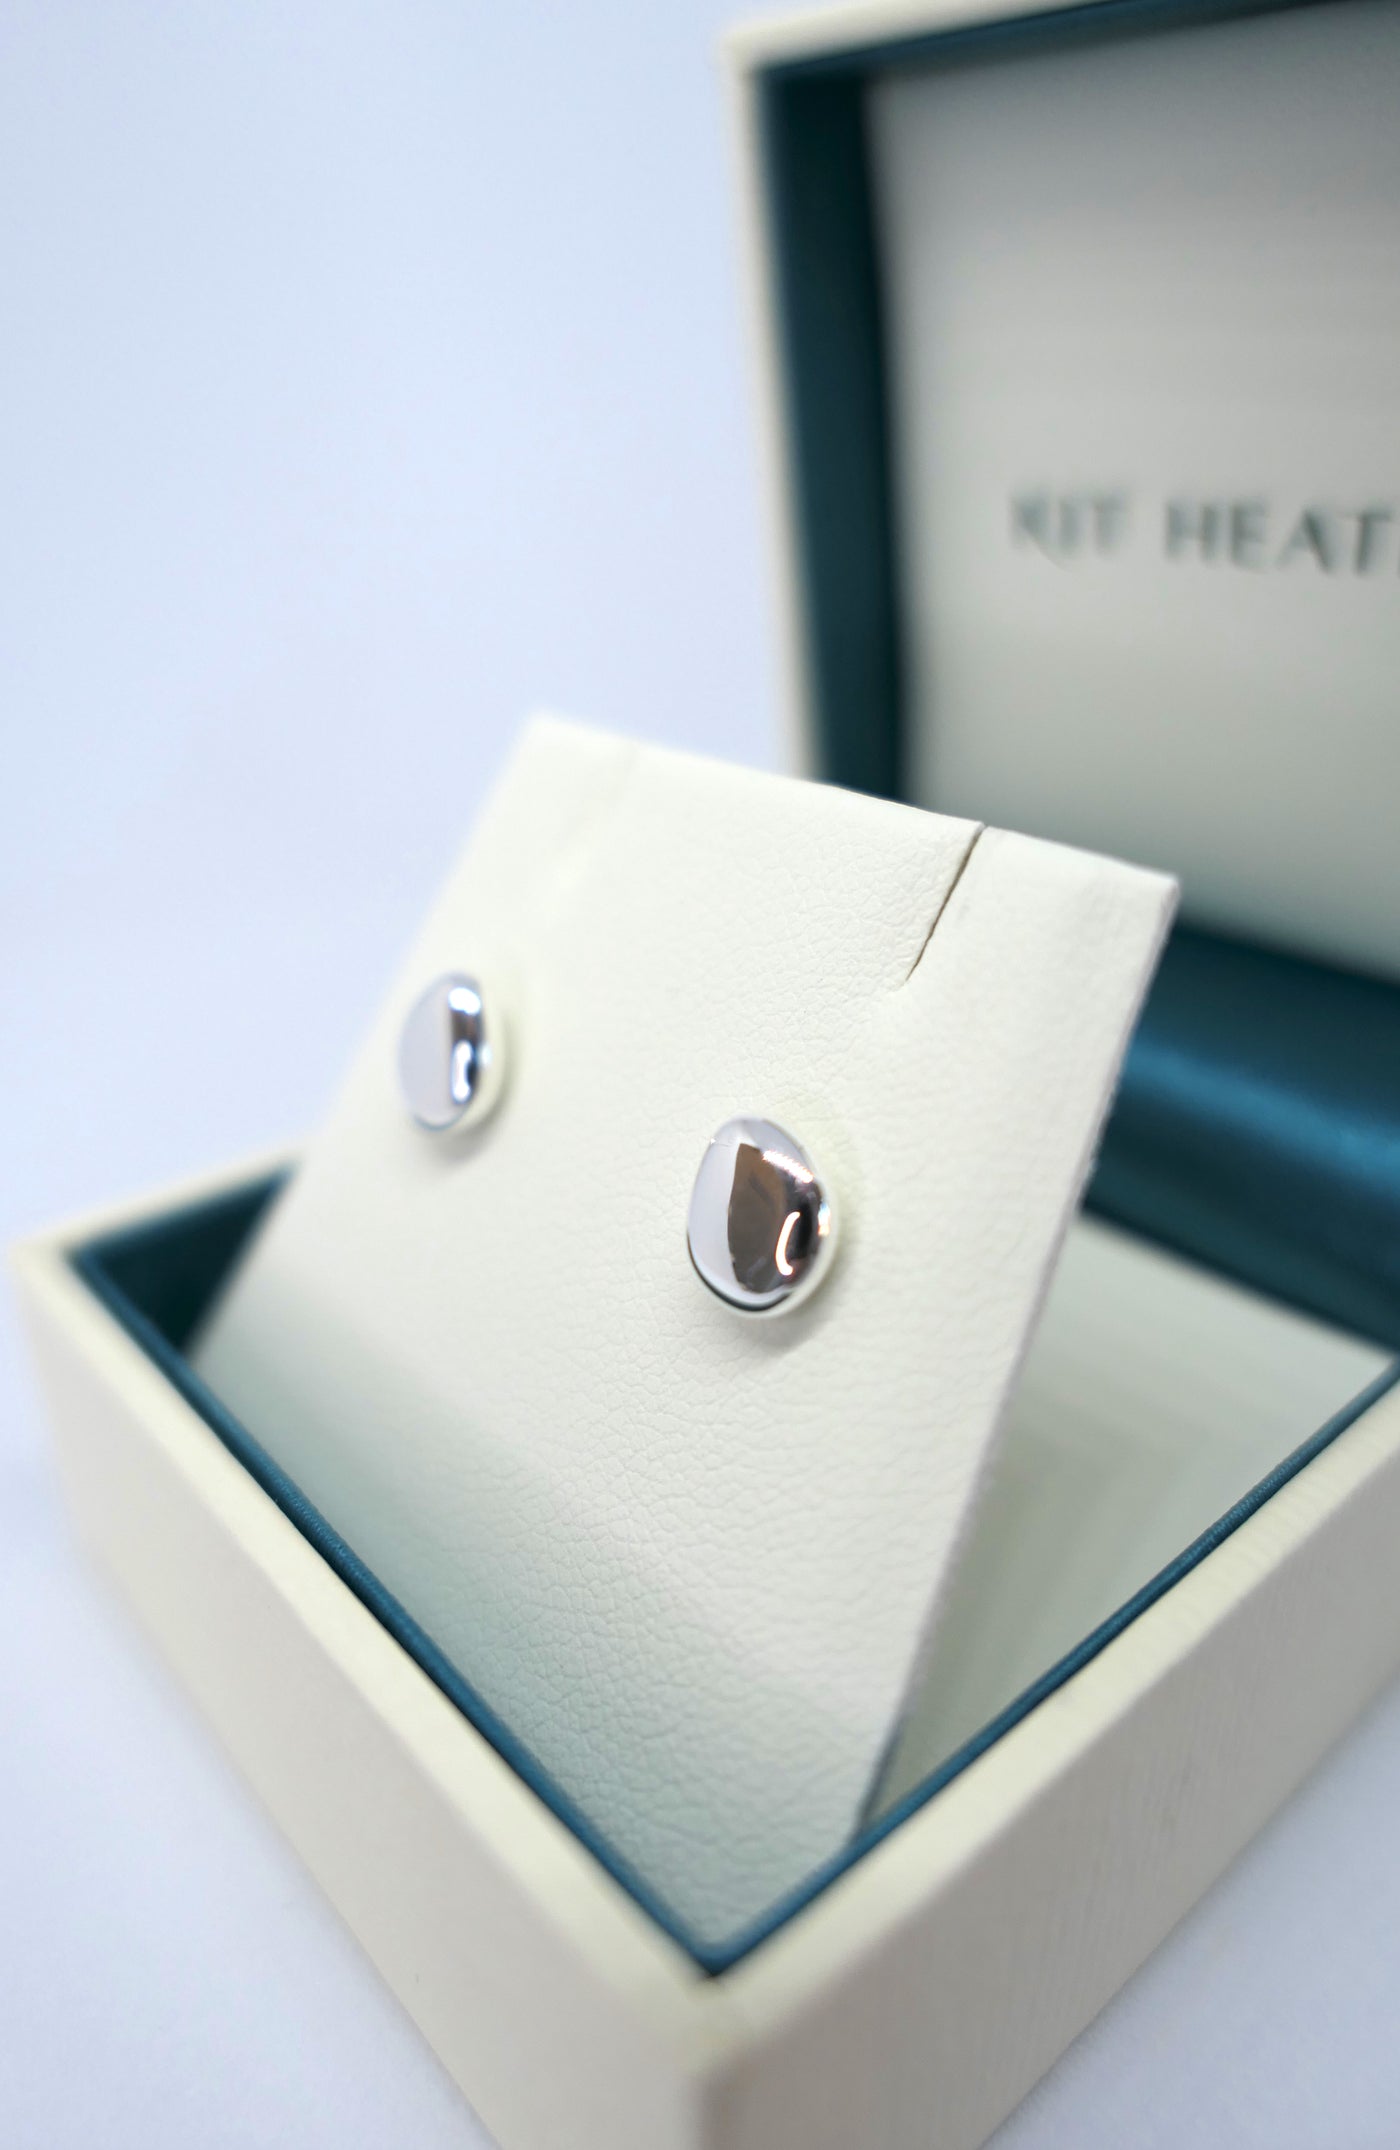 Kit Heath Coast Pebble Earrings